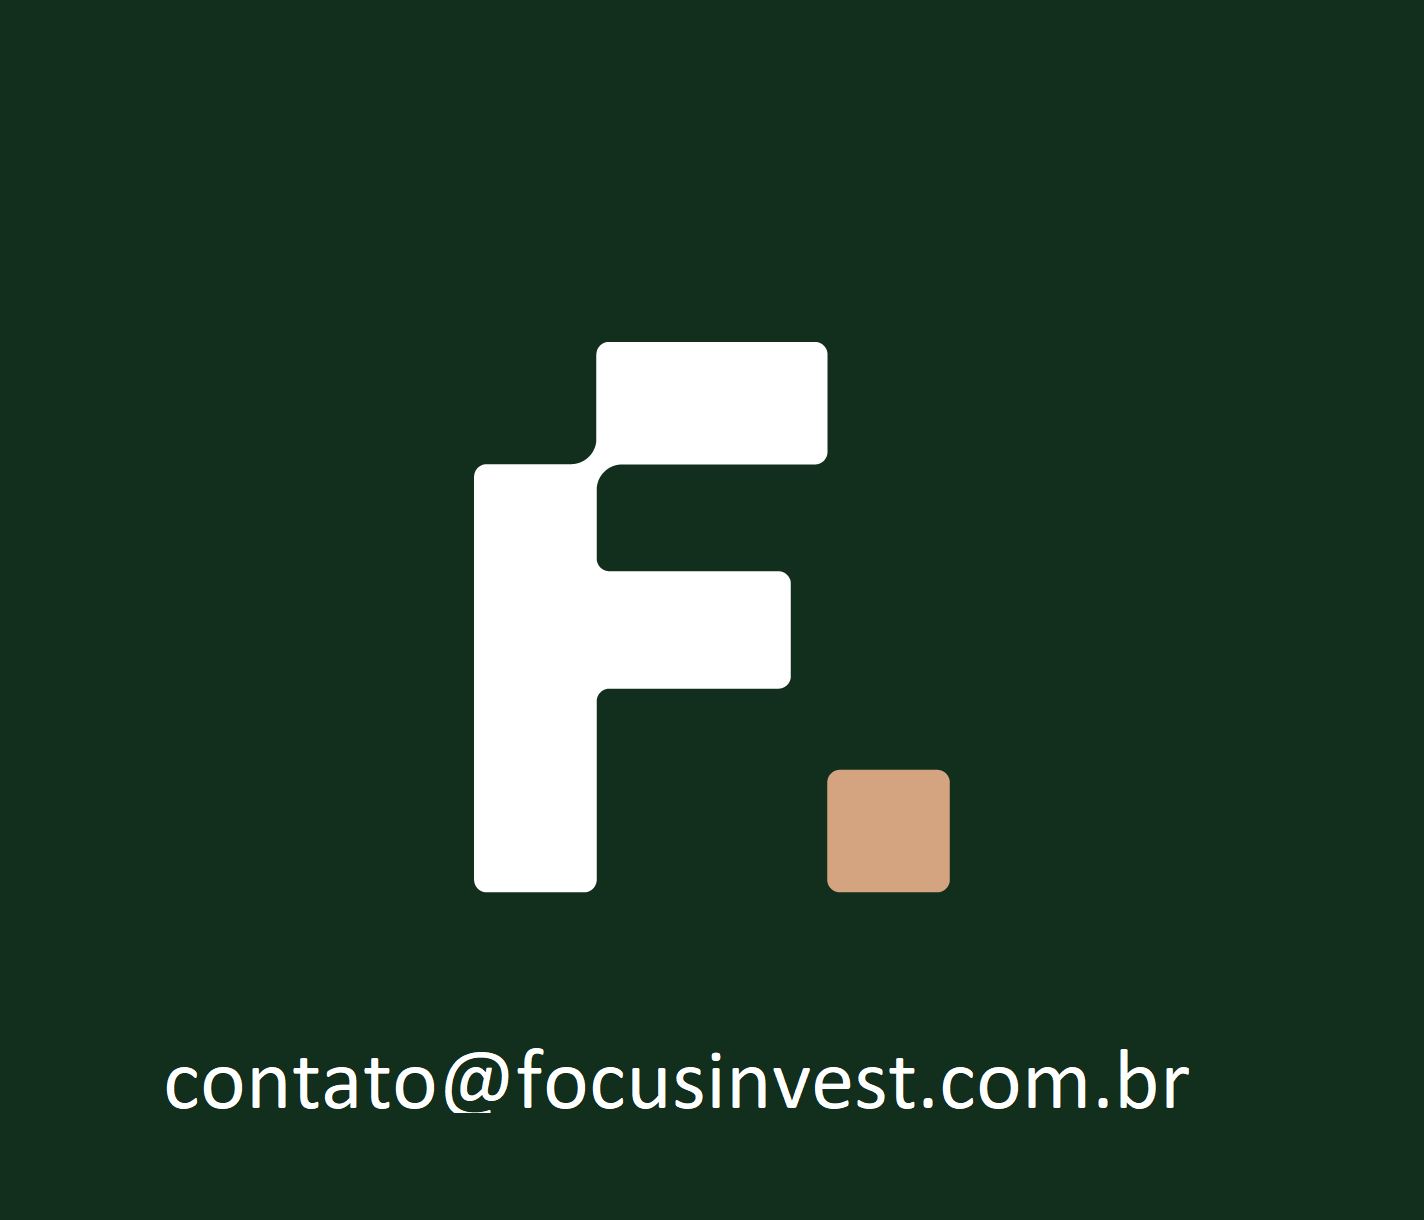 contato@focusinvest.com.br